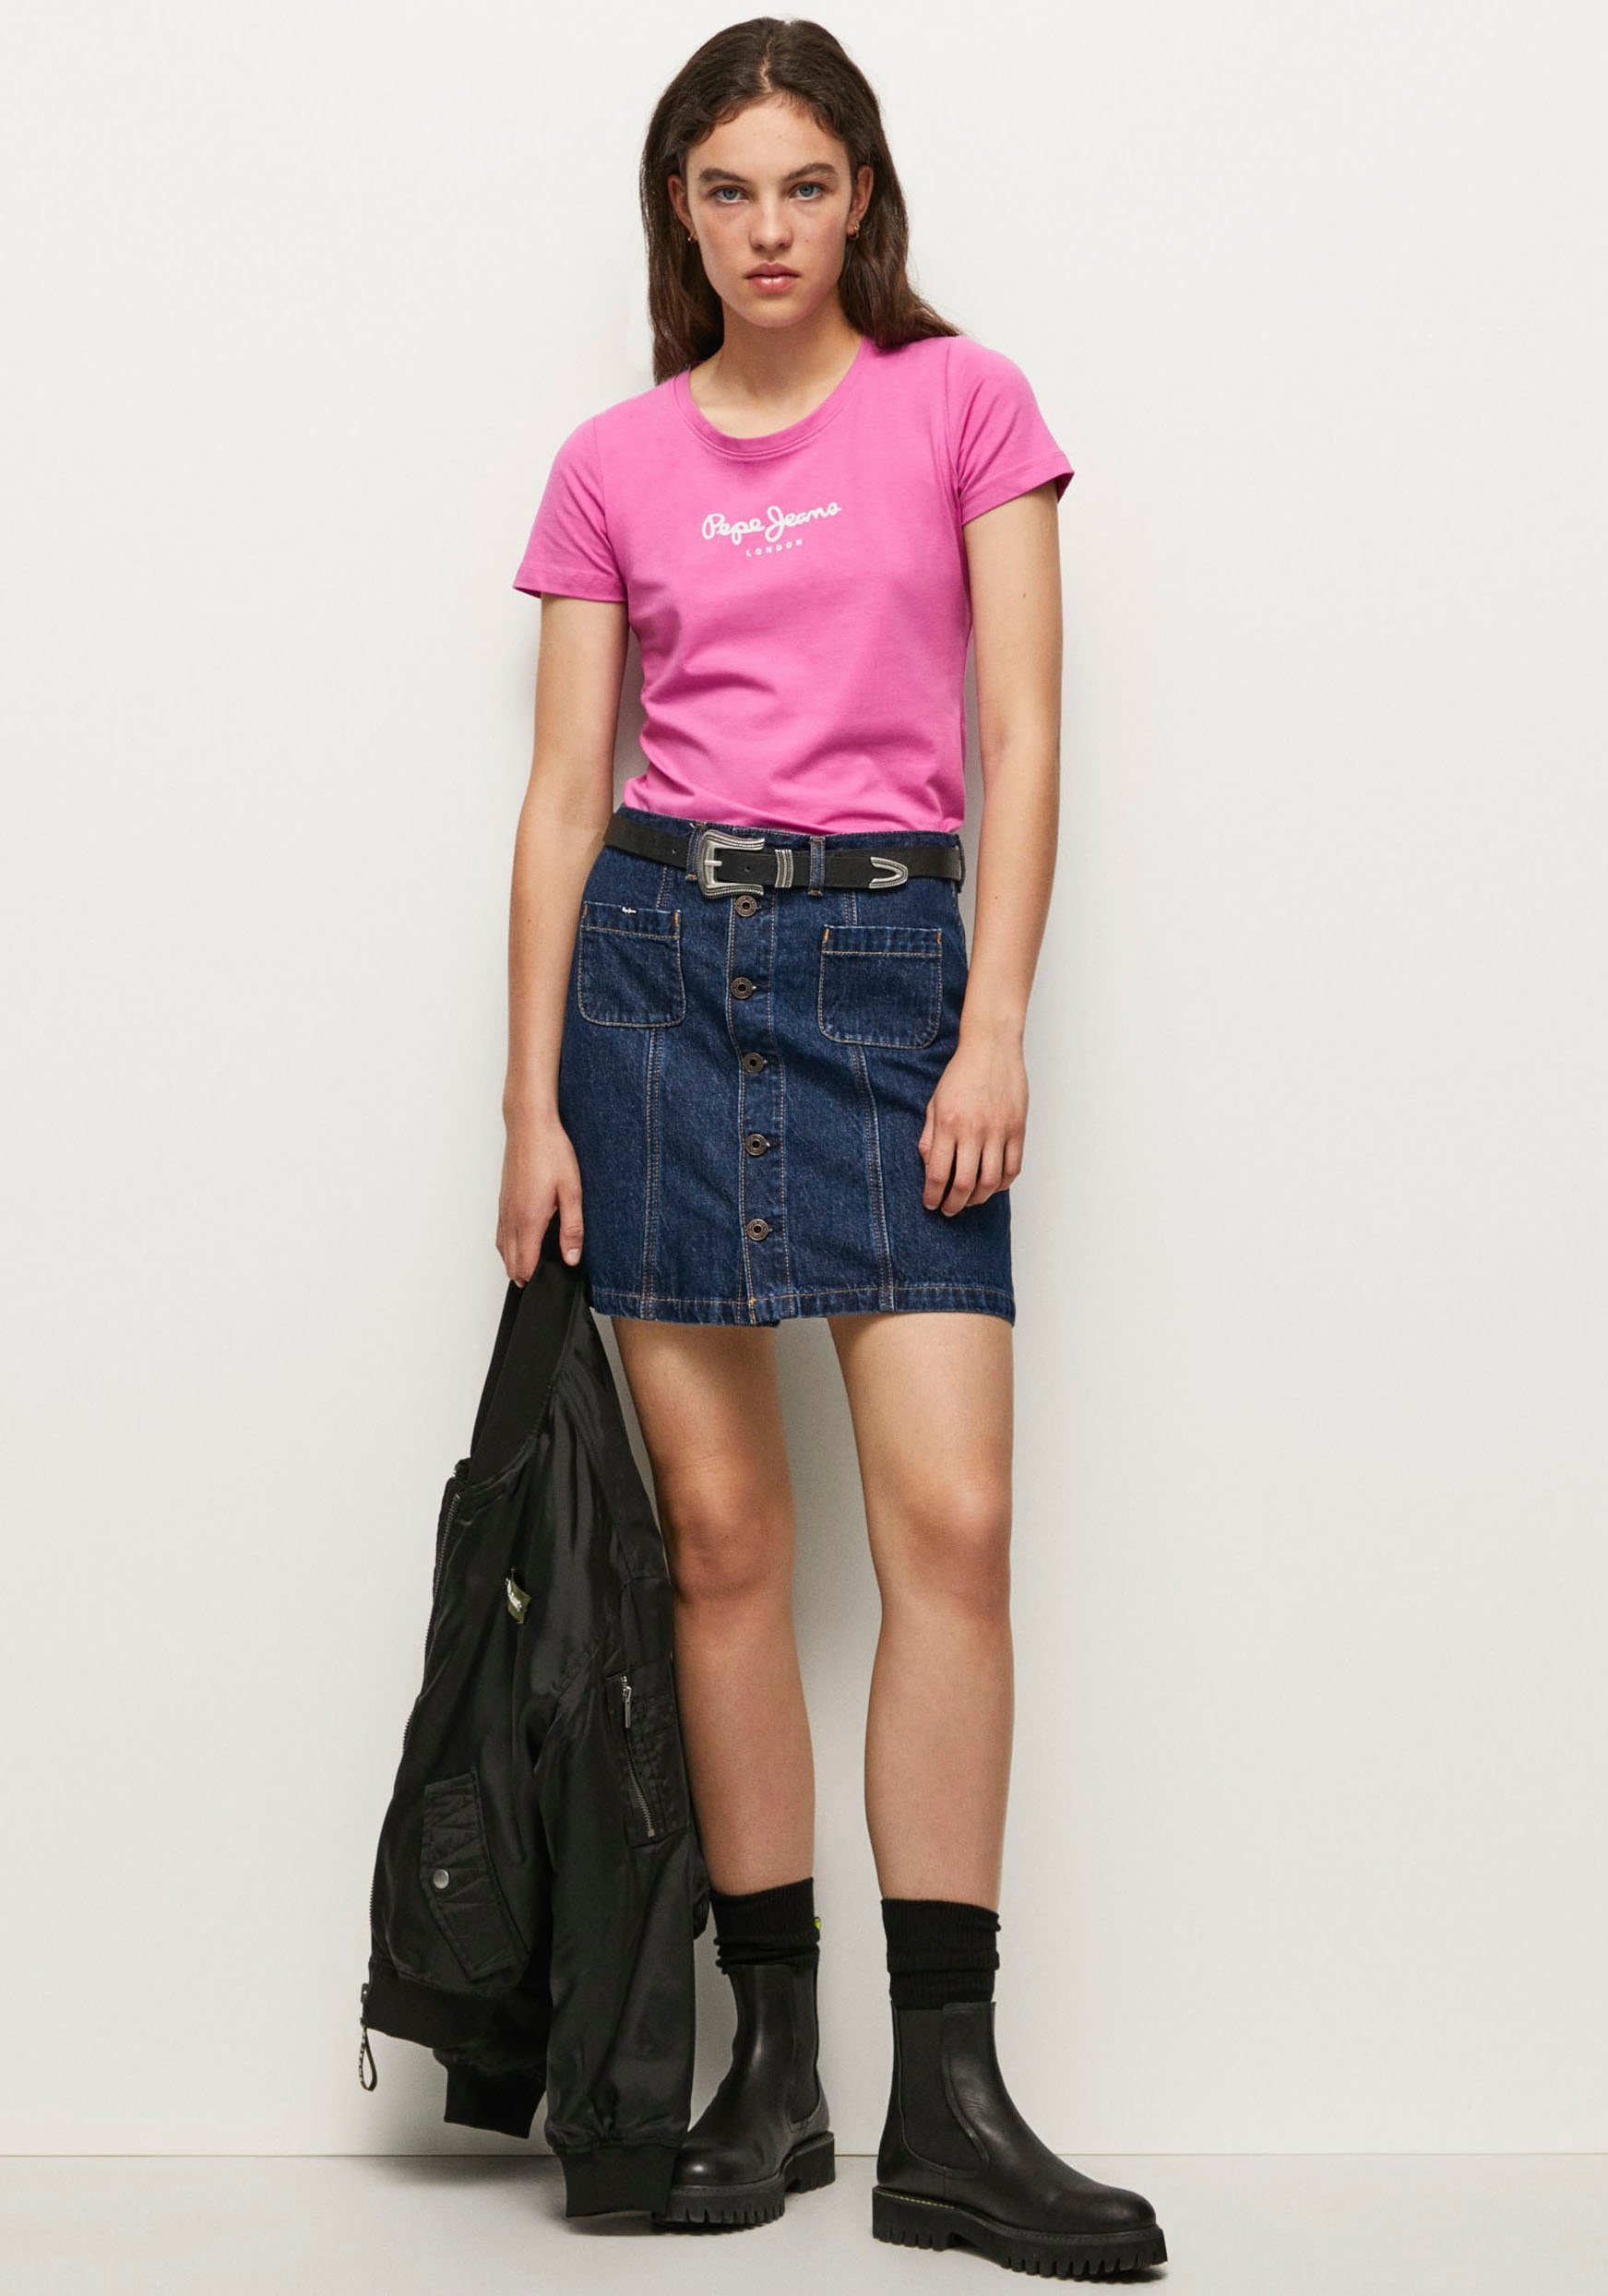 Jeans Passform 363ENGLISH Optik T-Shirt Pepe unifarbener in schlichter figurbetonter und VIOLETTE ROSE in